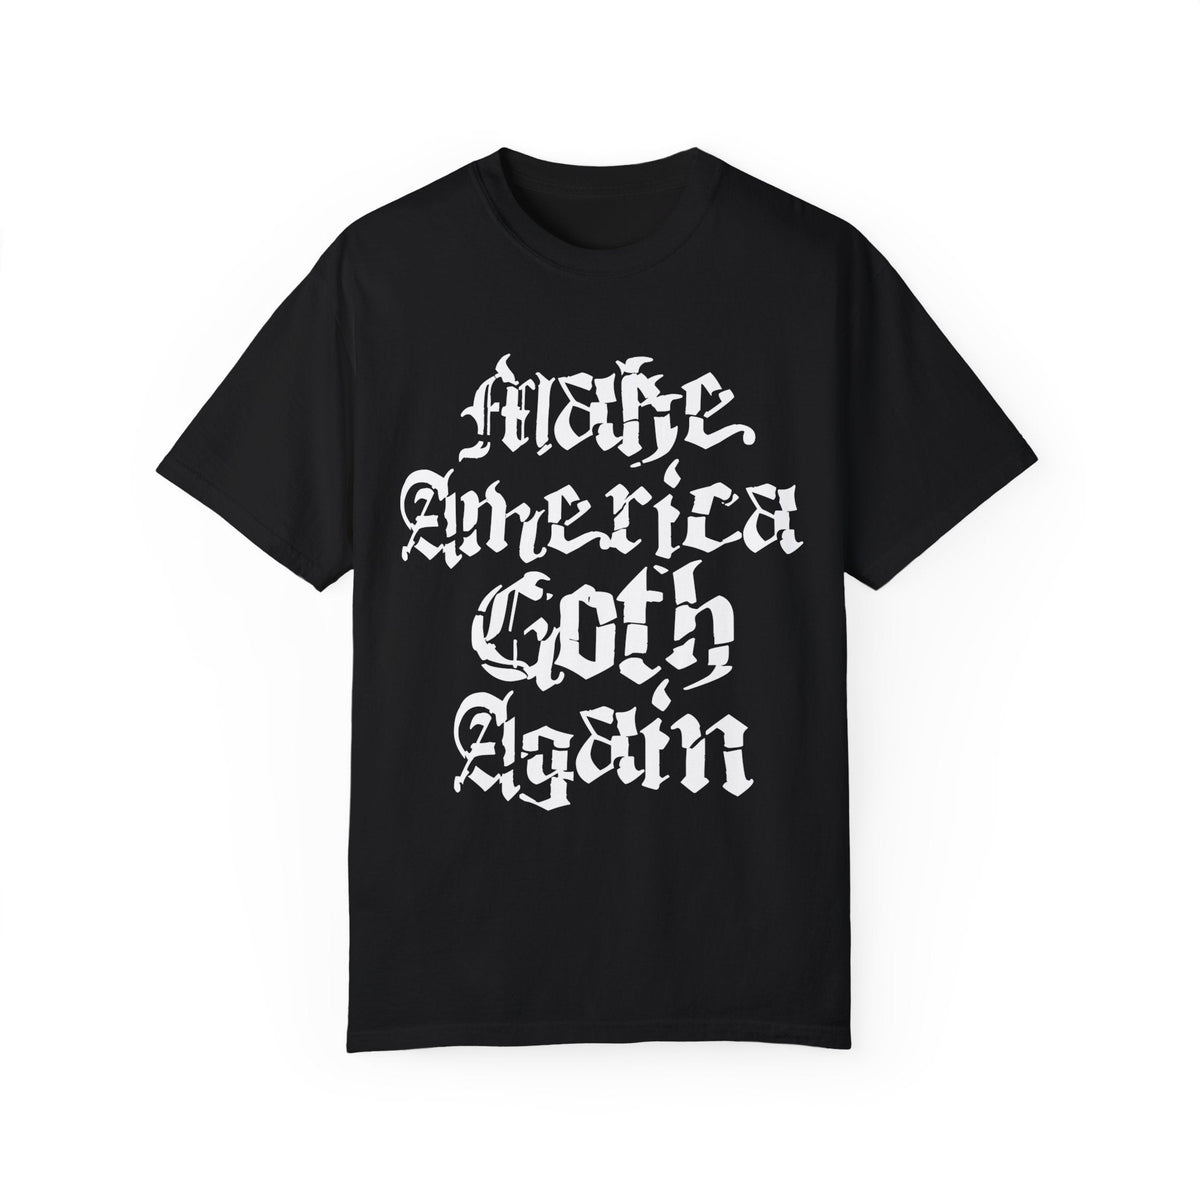 Make America Goth Again Comfy Tee - Goth Cloth Co.T - Shirt28460963262185270574